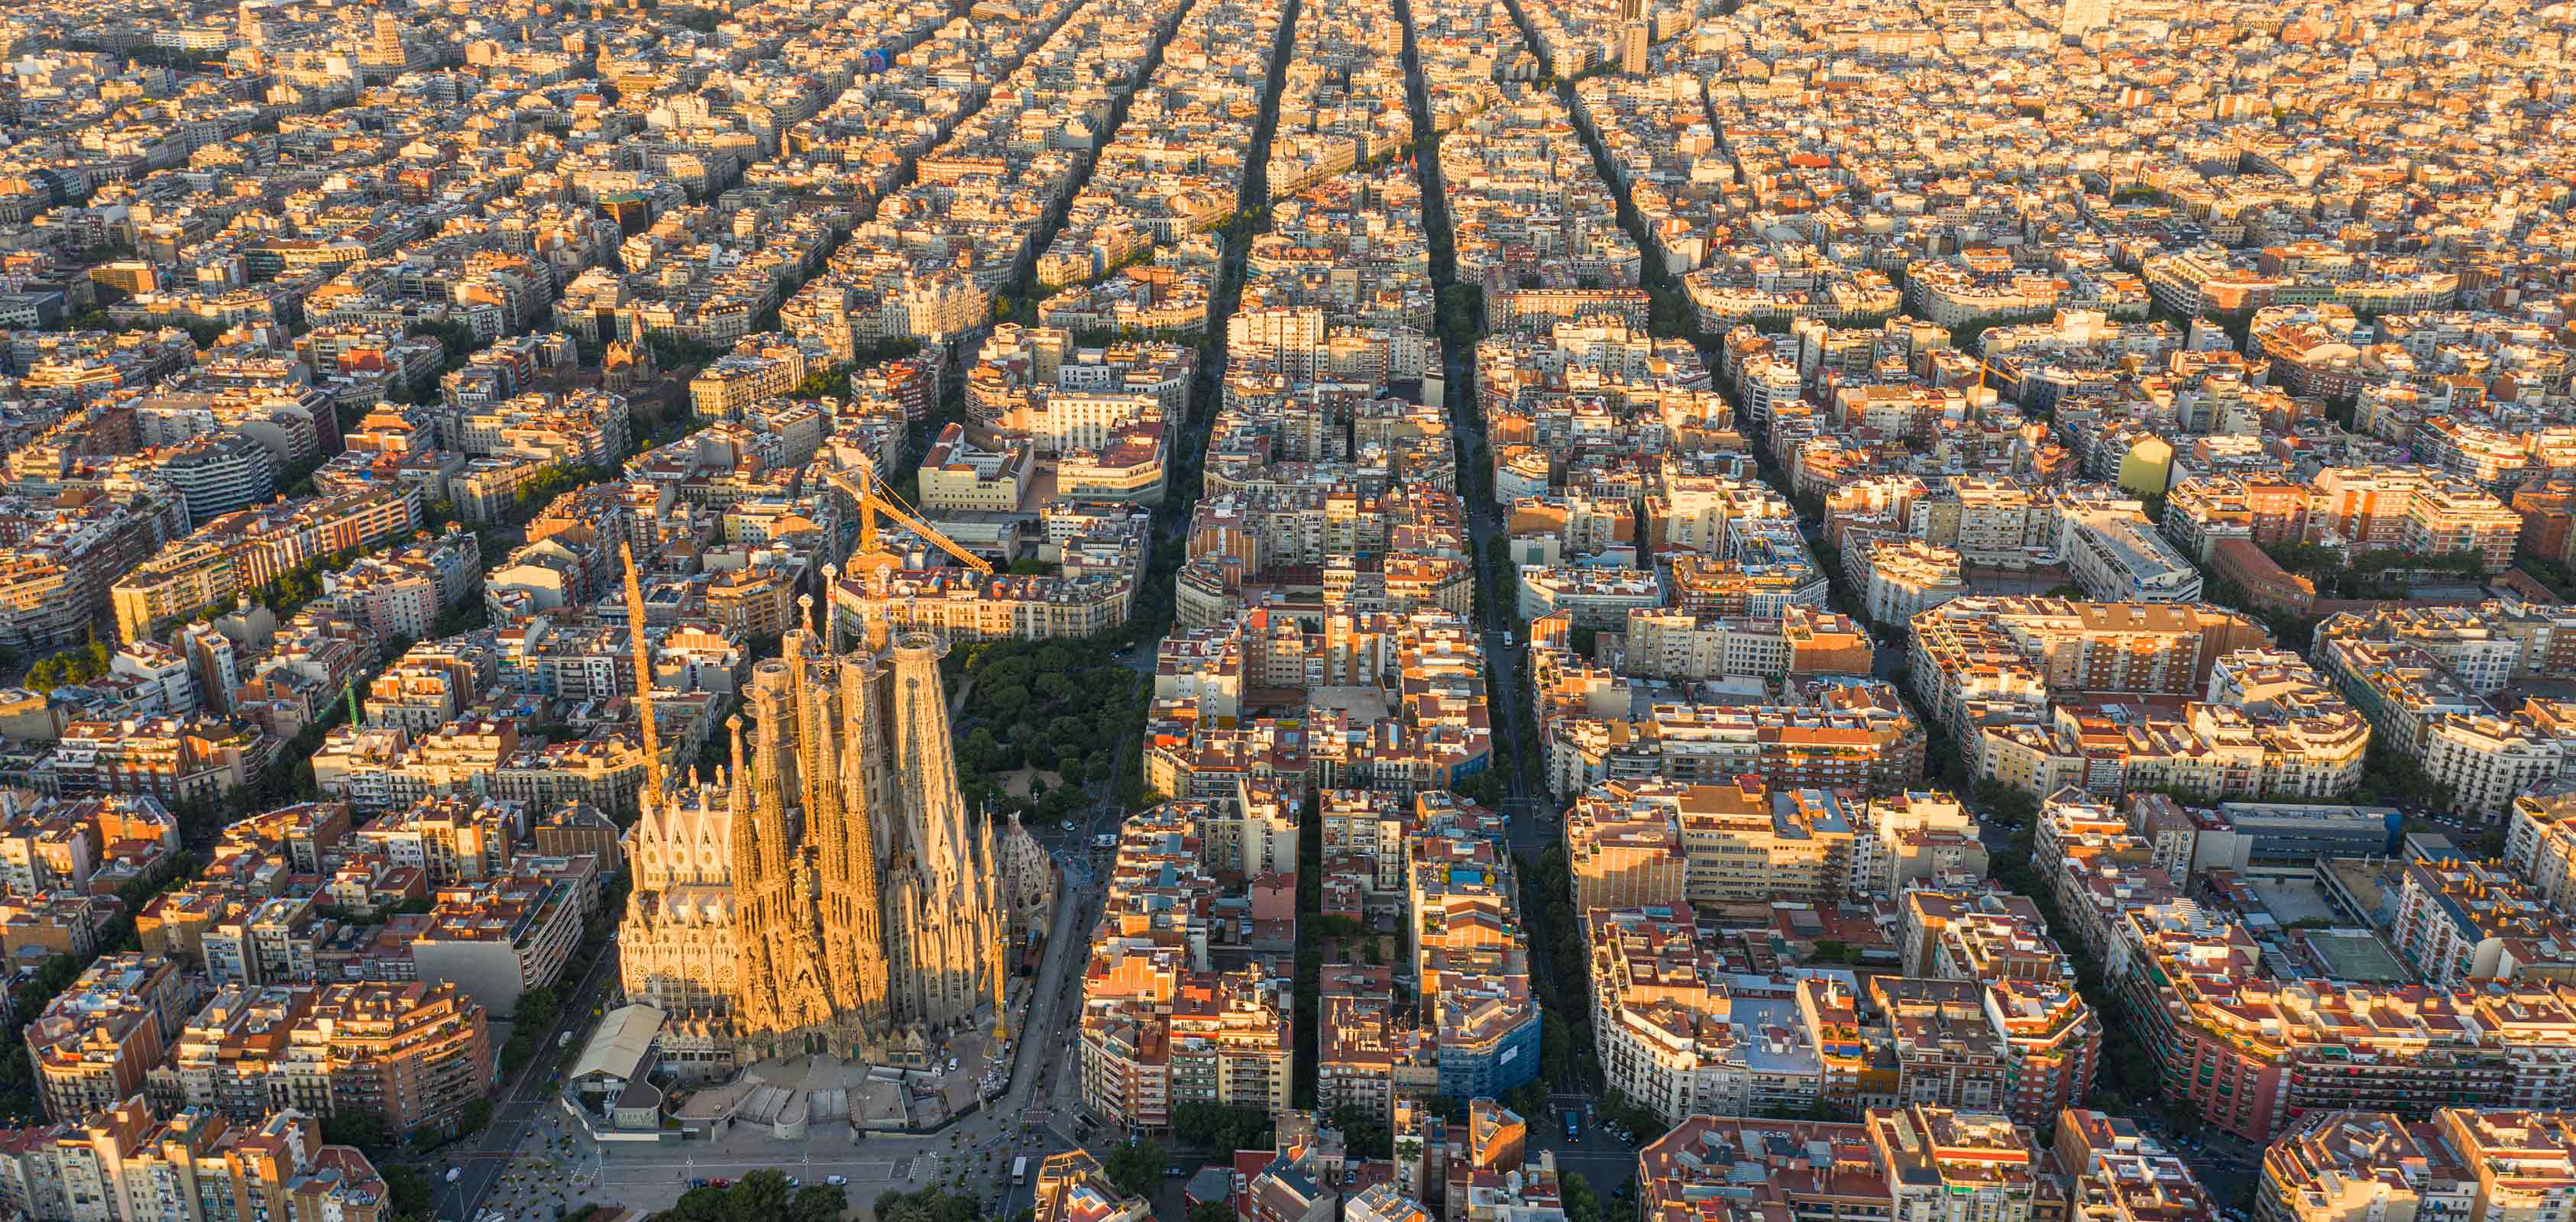 Veduta aerea di Barcellona con il distretto di Eixample e la cattedrale della Sagrada Familia al centro - SEAT, vivere con creatività